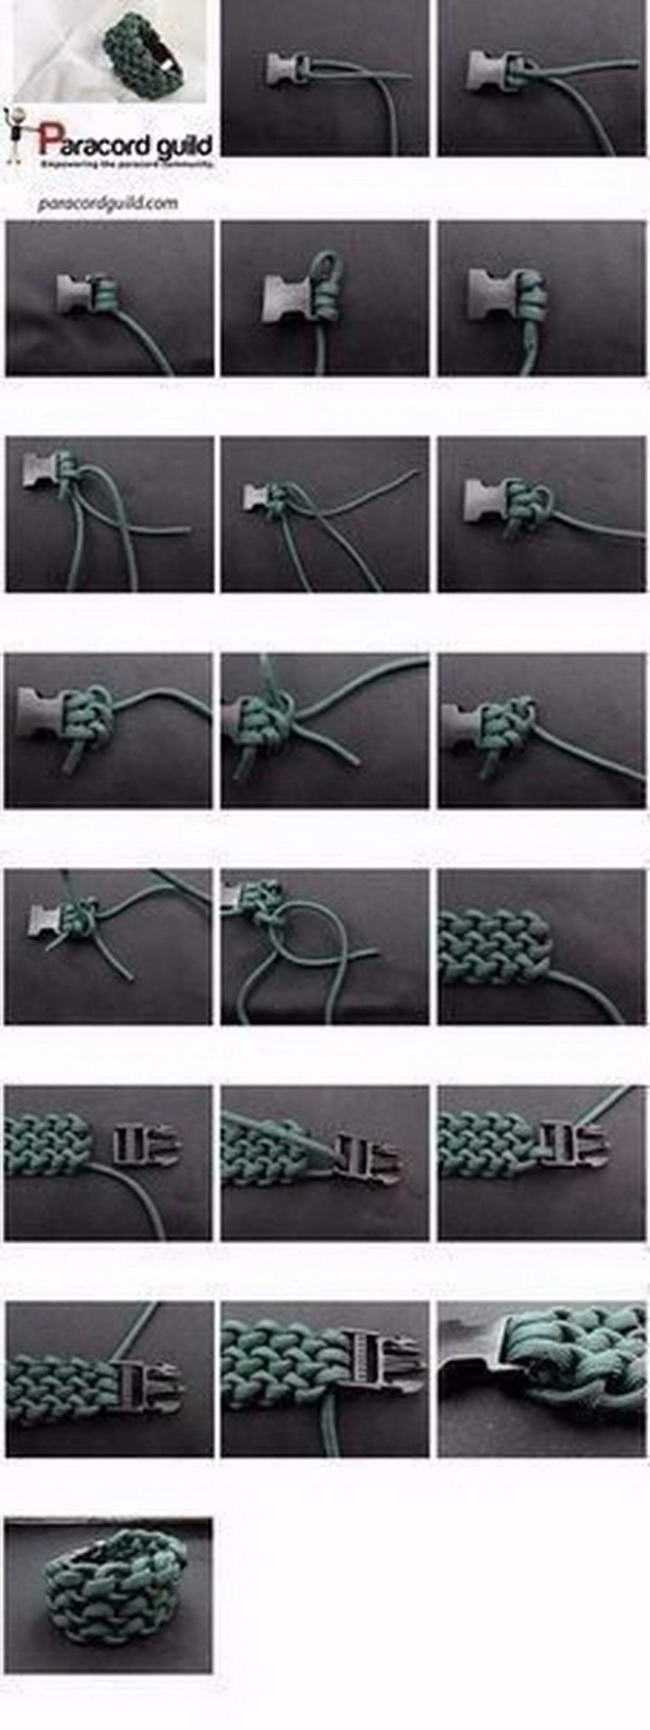 Шнур паракордовый — браслет выживания своими руками и его схемы плетения